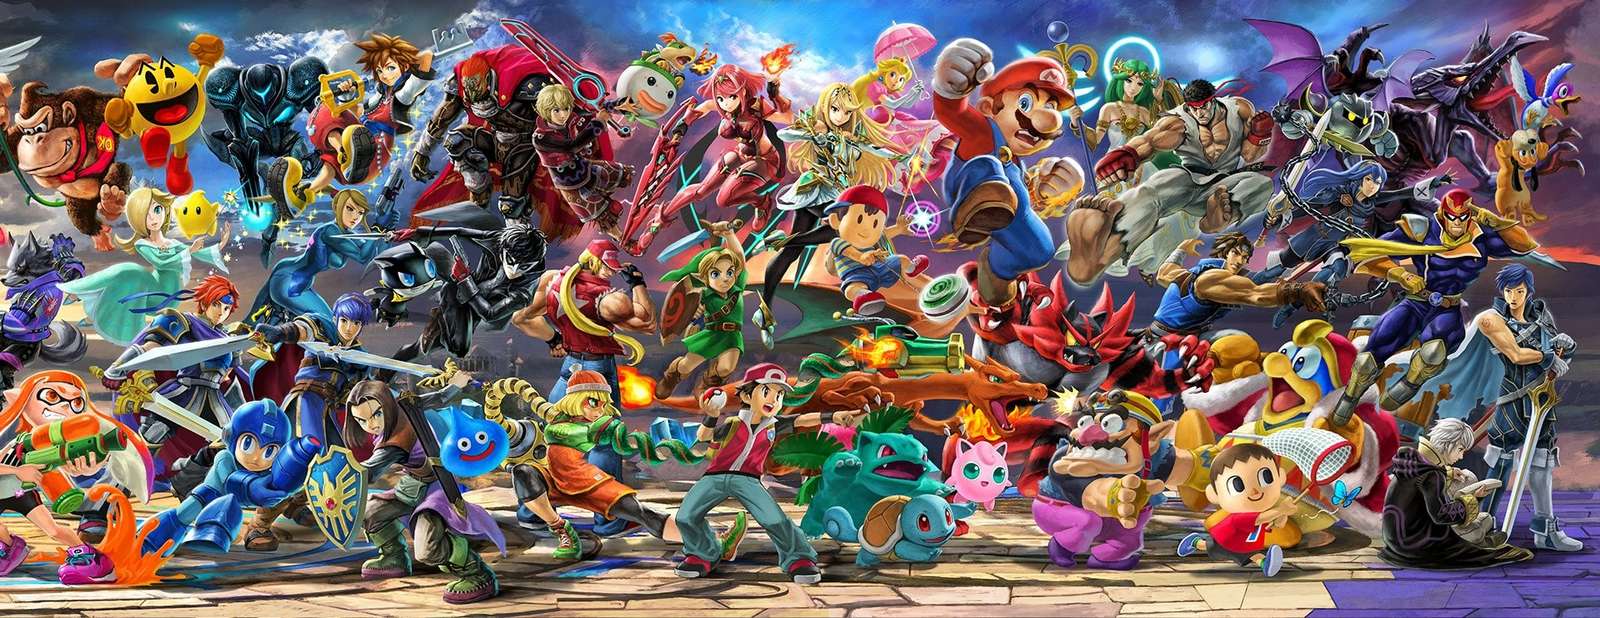 Τοιχογραφία Super Smash Bros Ultimate, δεξιά παζλ online